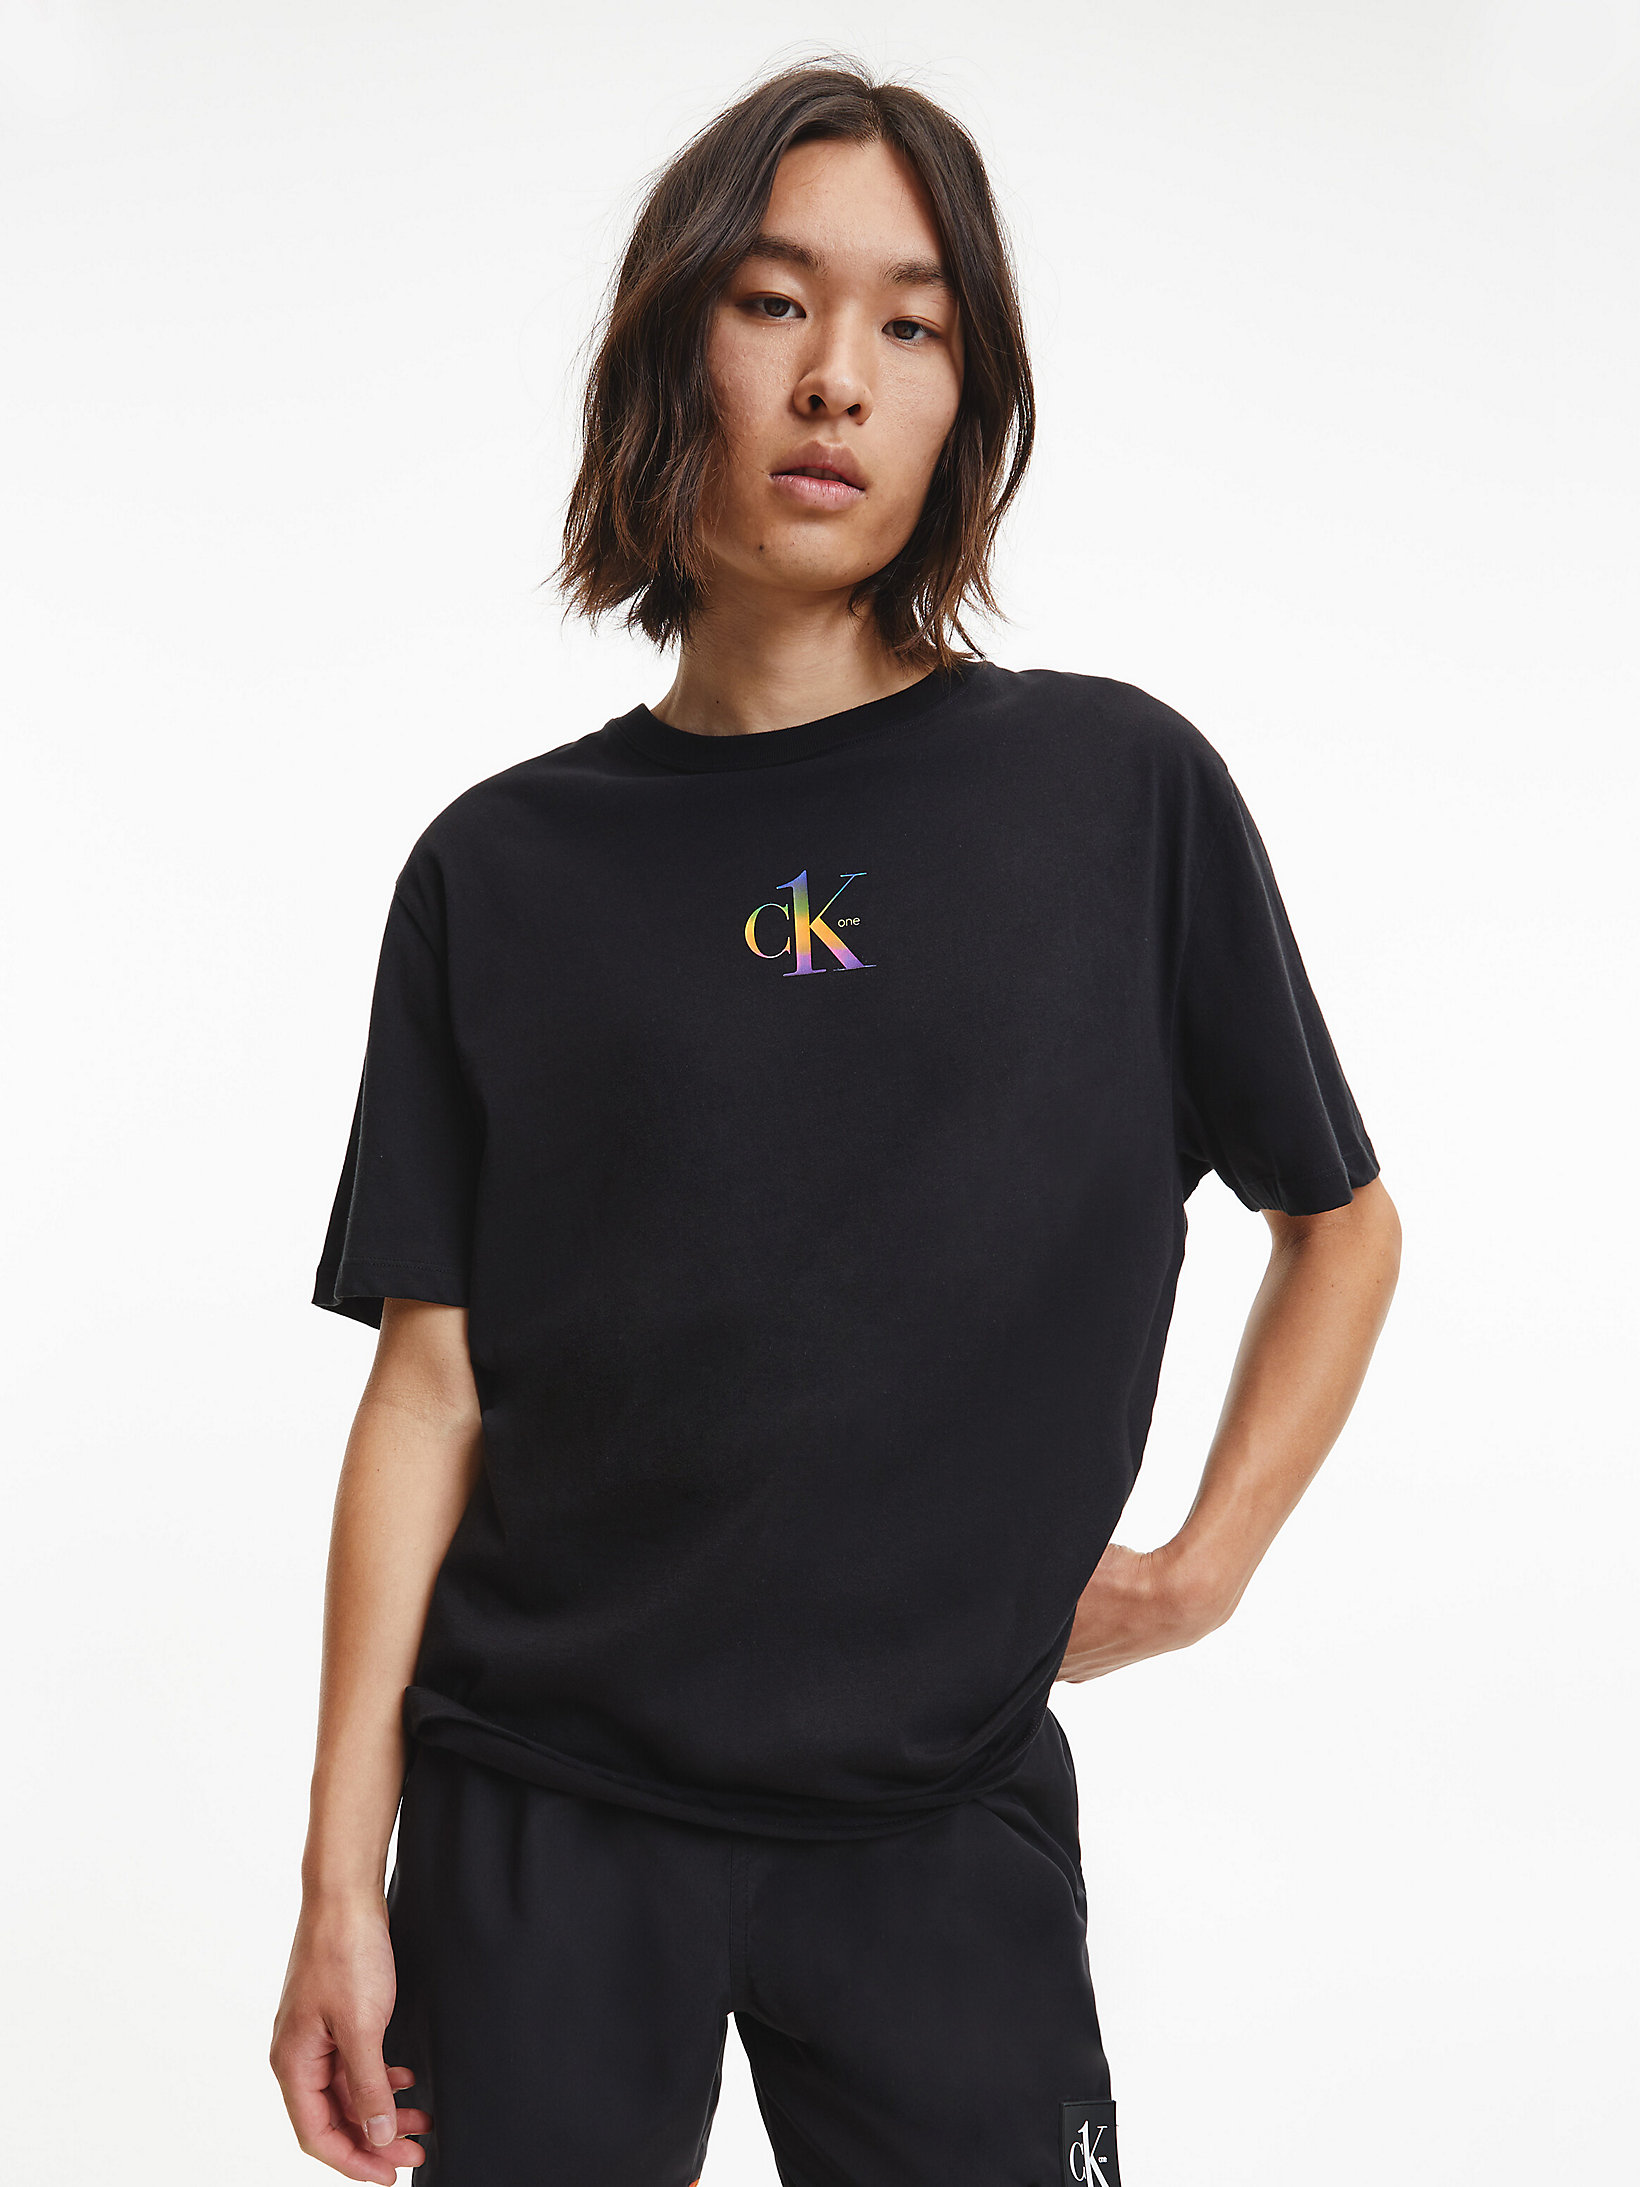 Pvh Black T-Shirt Da Mare Unisex - Pride undefined Unisex Calvin Klein